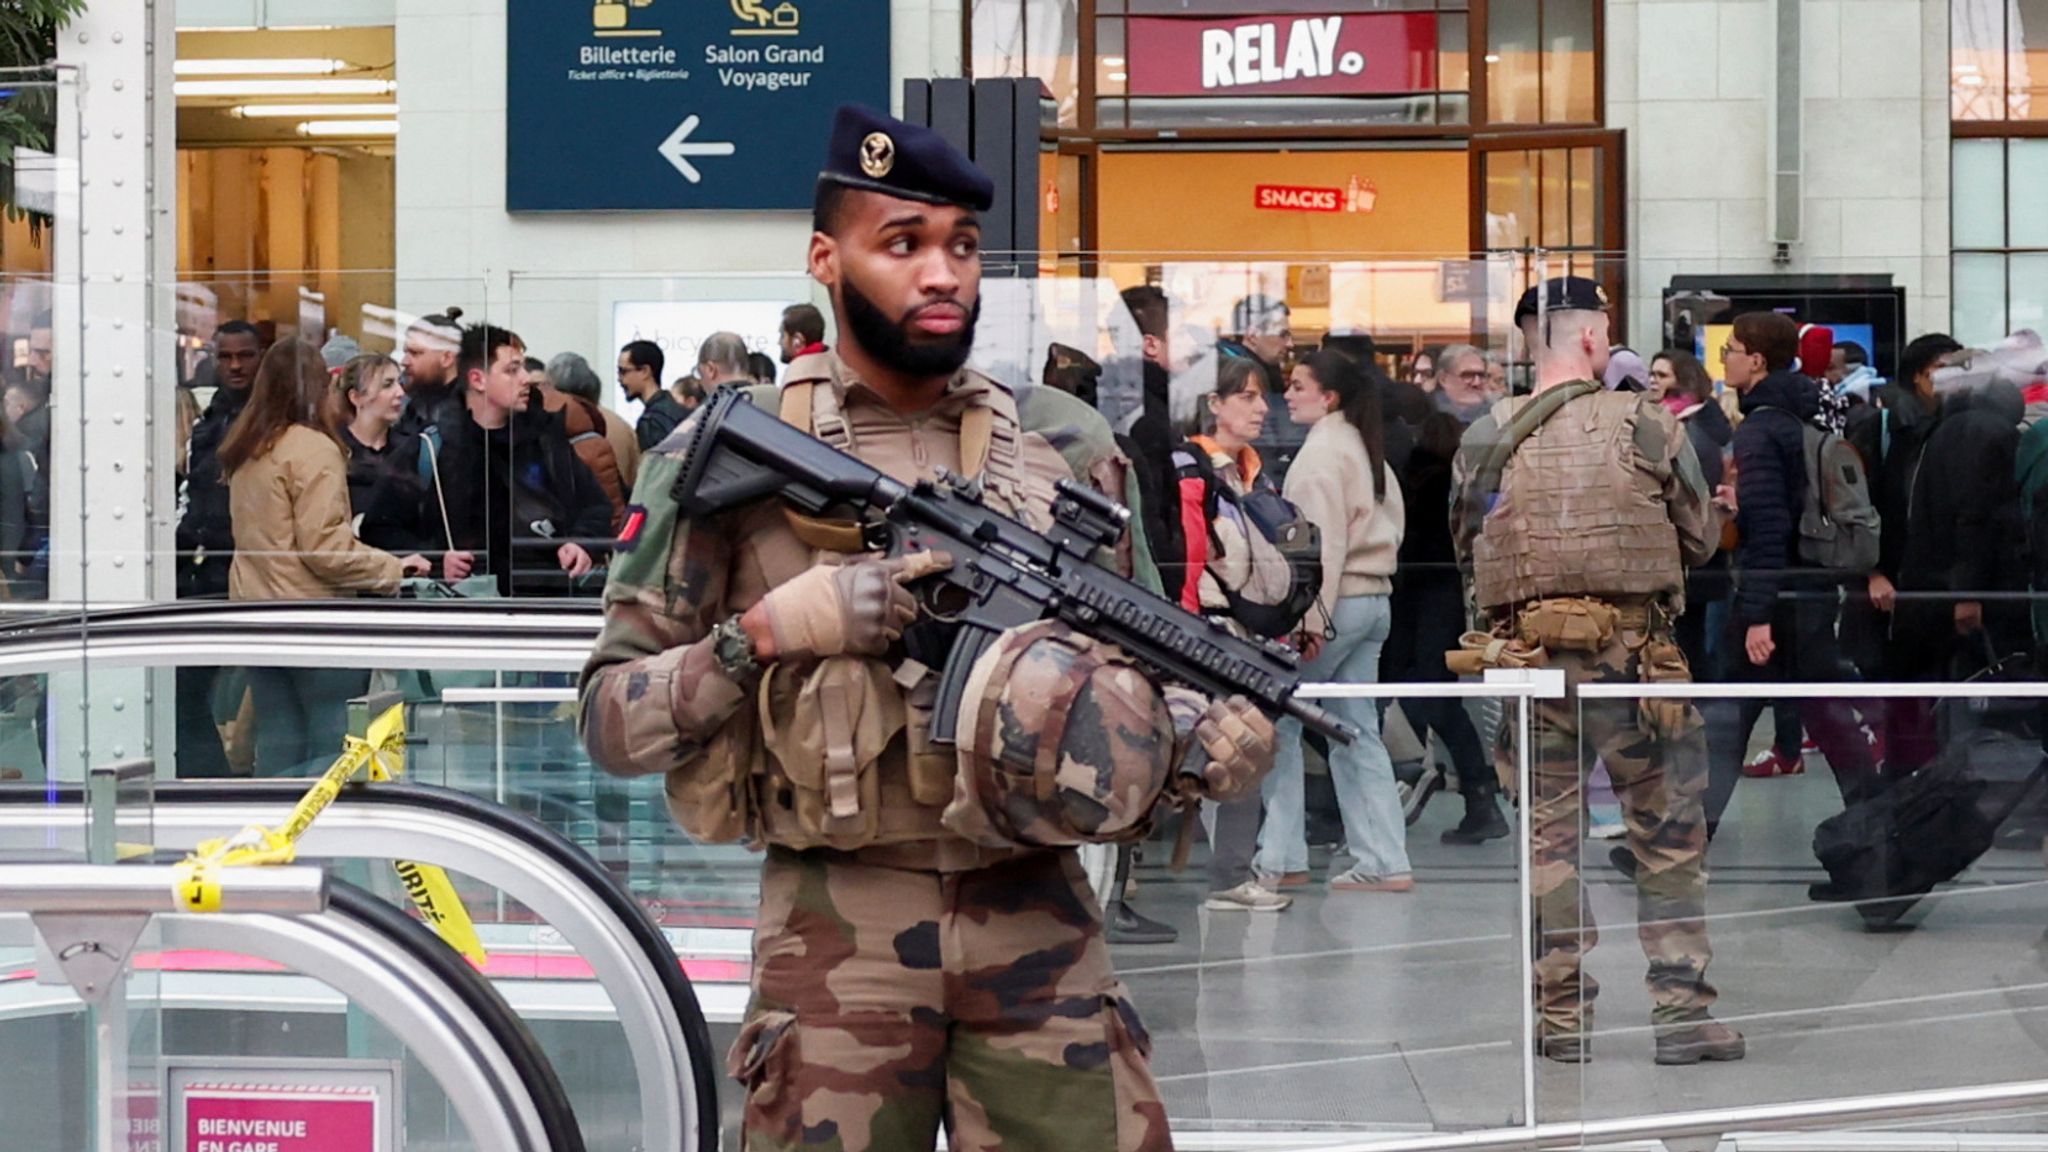 Parigi, un maliano accoltella tre persone alla stazione: arrestato, aveva documenti italiani